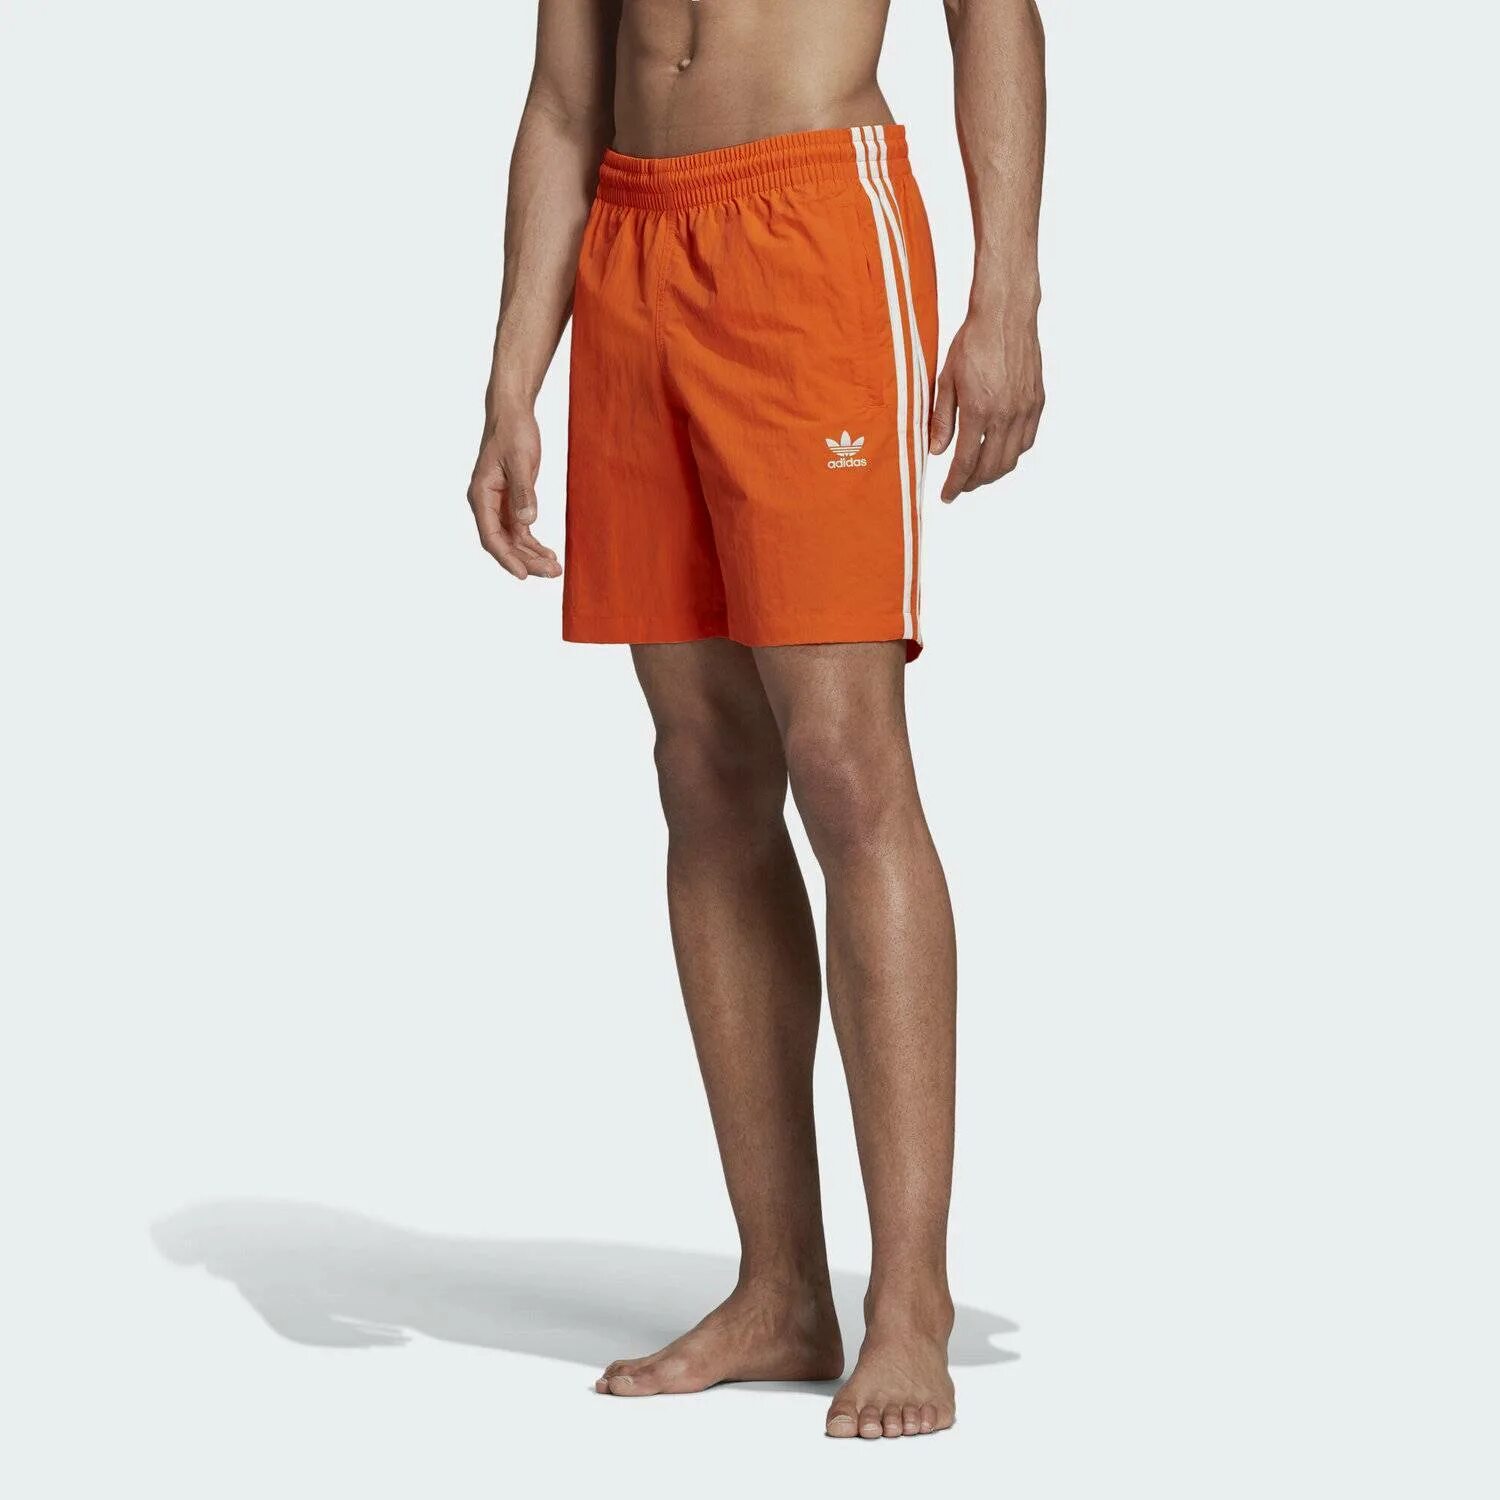 Originals шорты. Шорты адидас оранжевые мужские. Adidas Originals 3-Stripes Swim shorts. Шорты адидас ориджинал мужские плавательные. Шорты adidas Performance Orange.